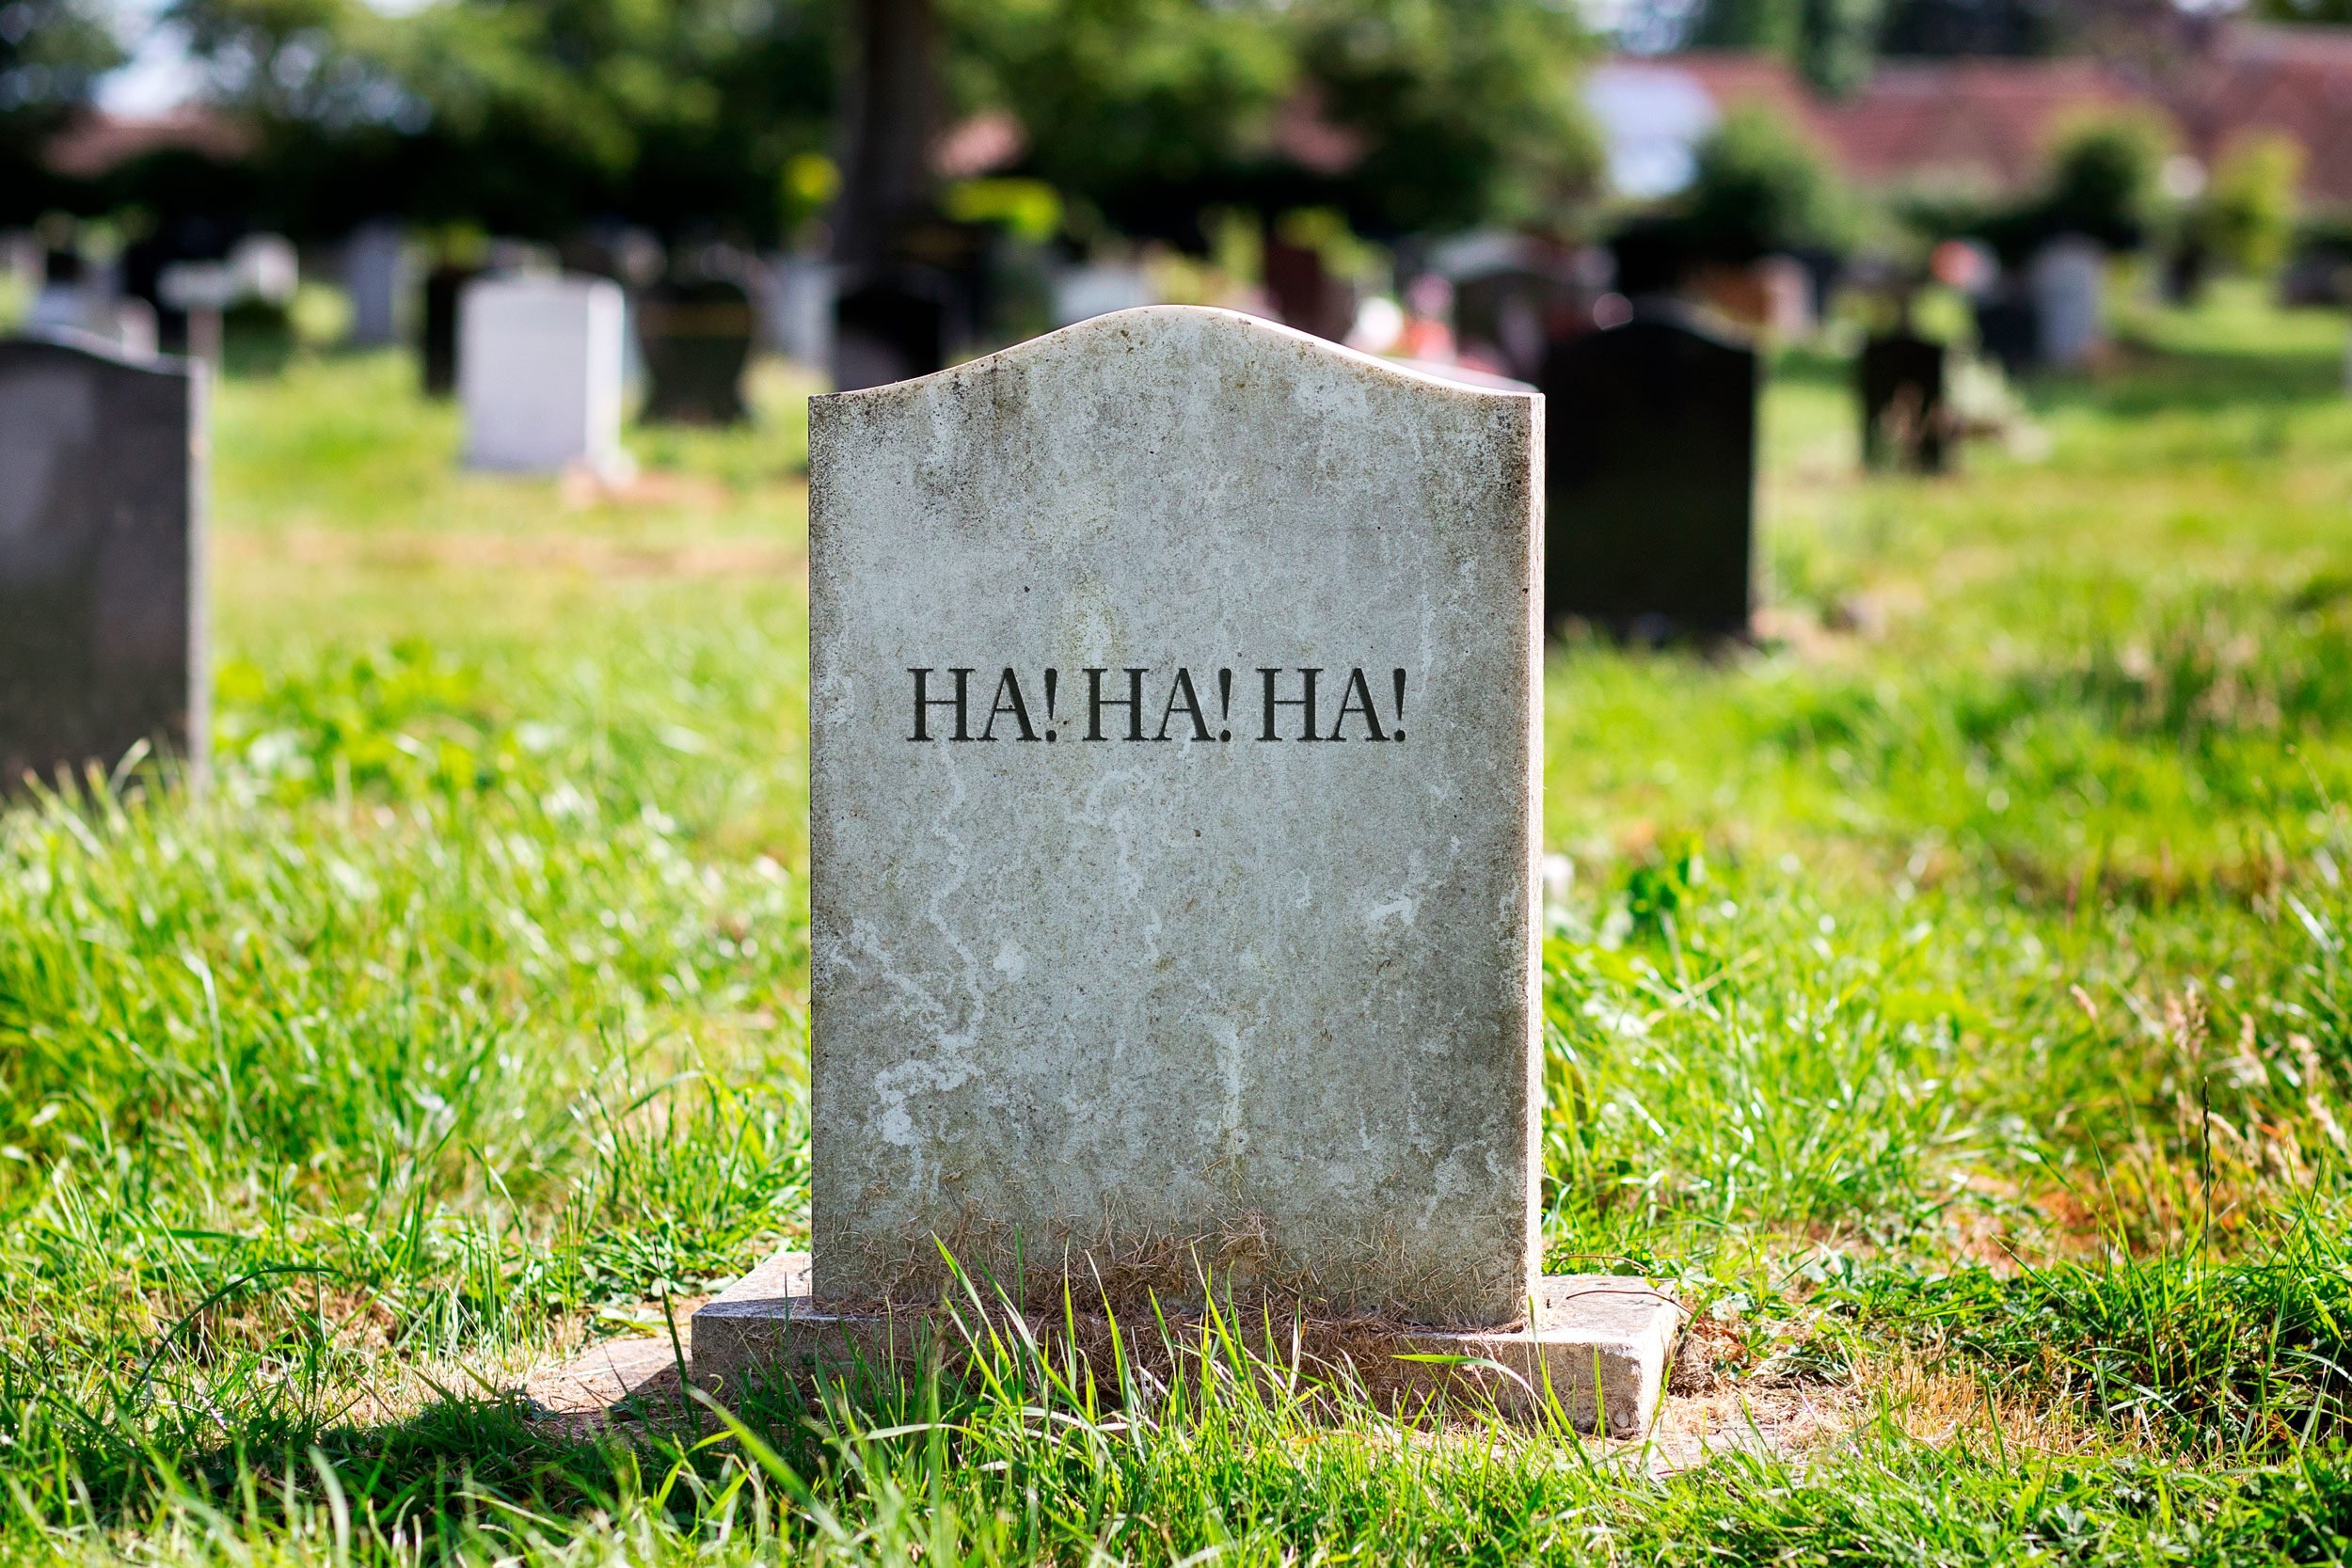 gravestone: "Ha! Ha! Ha!"